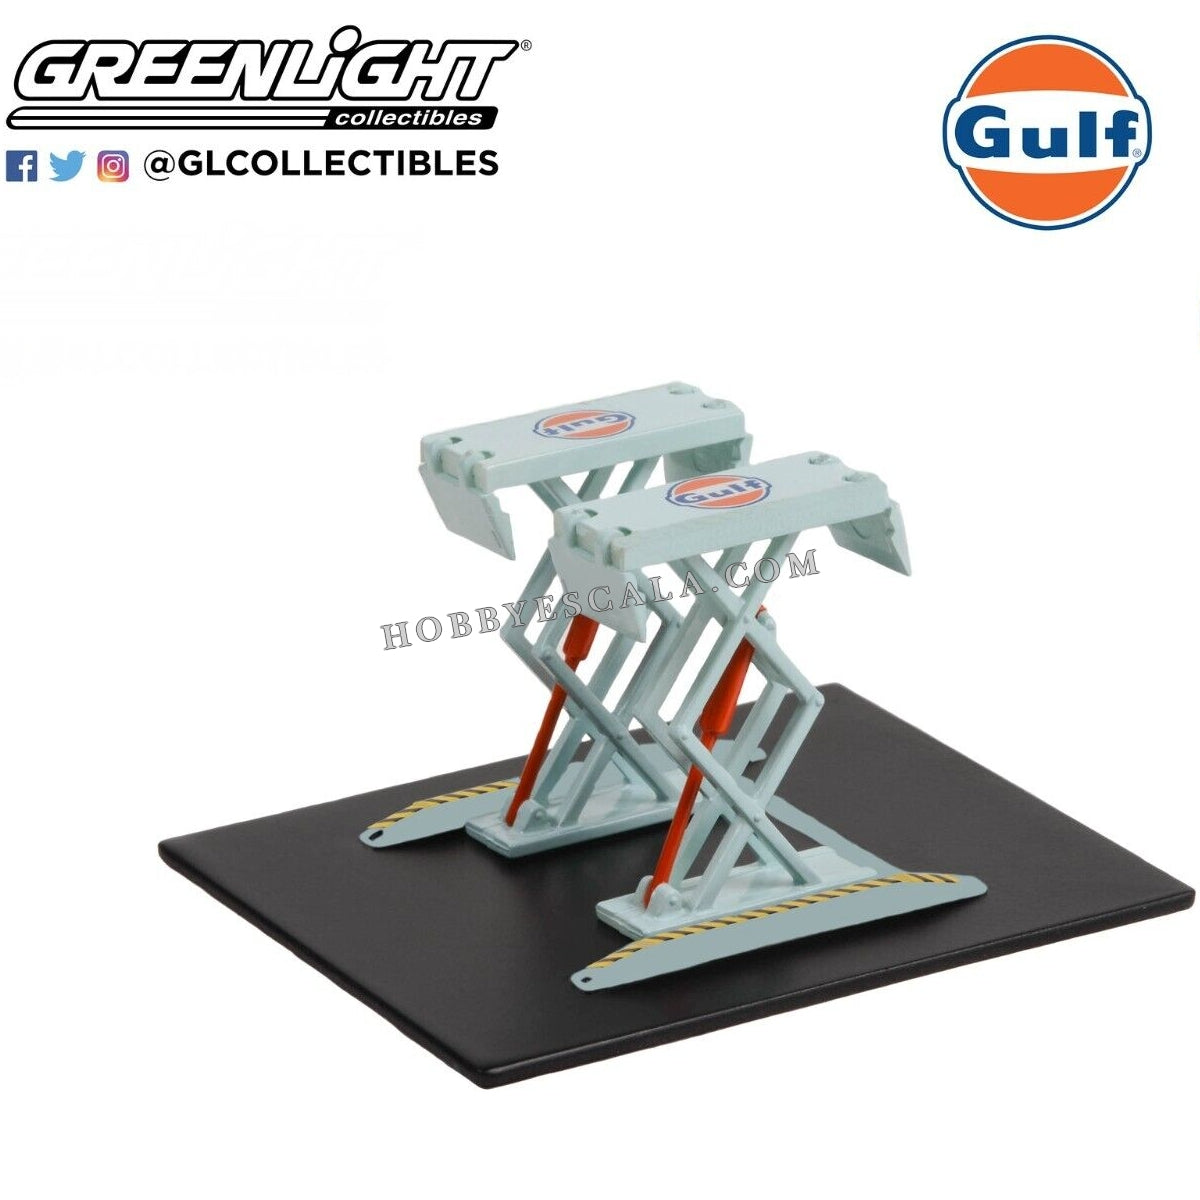 Greenlight 1/64 Gulf Oil - Elevador de taller